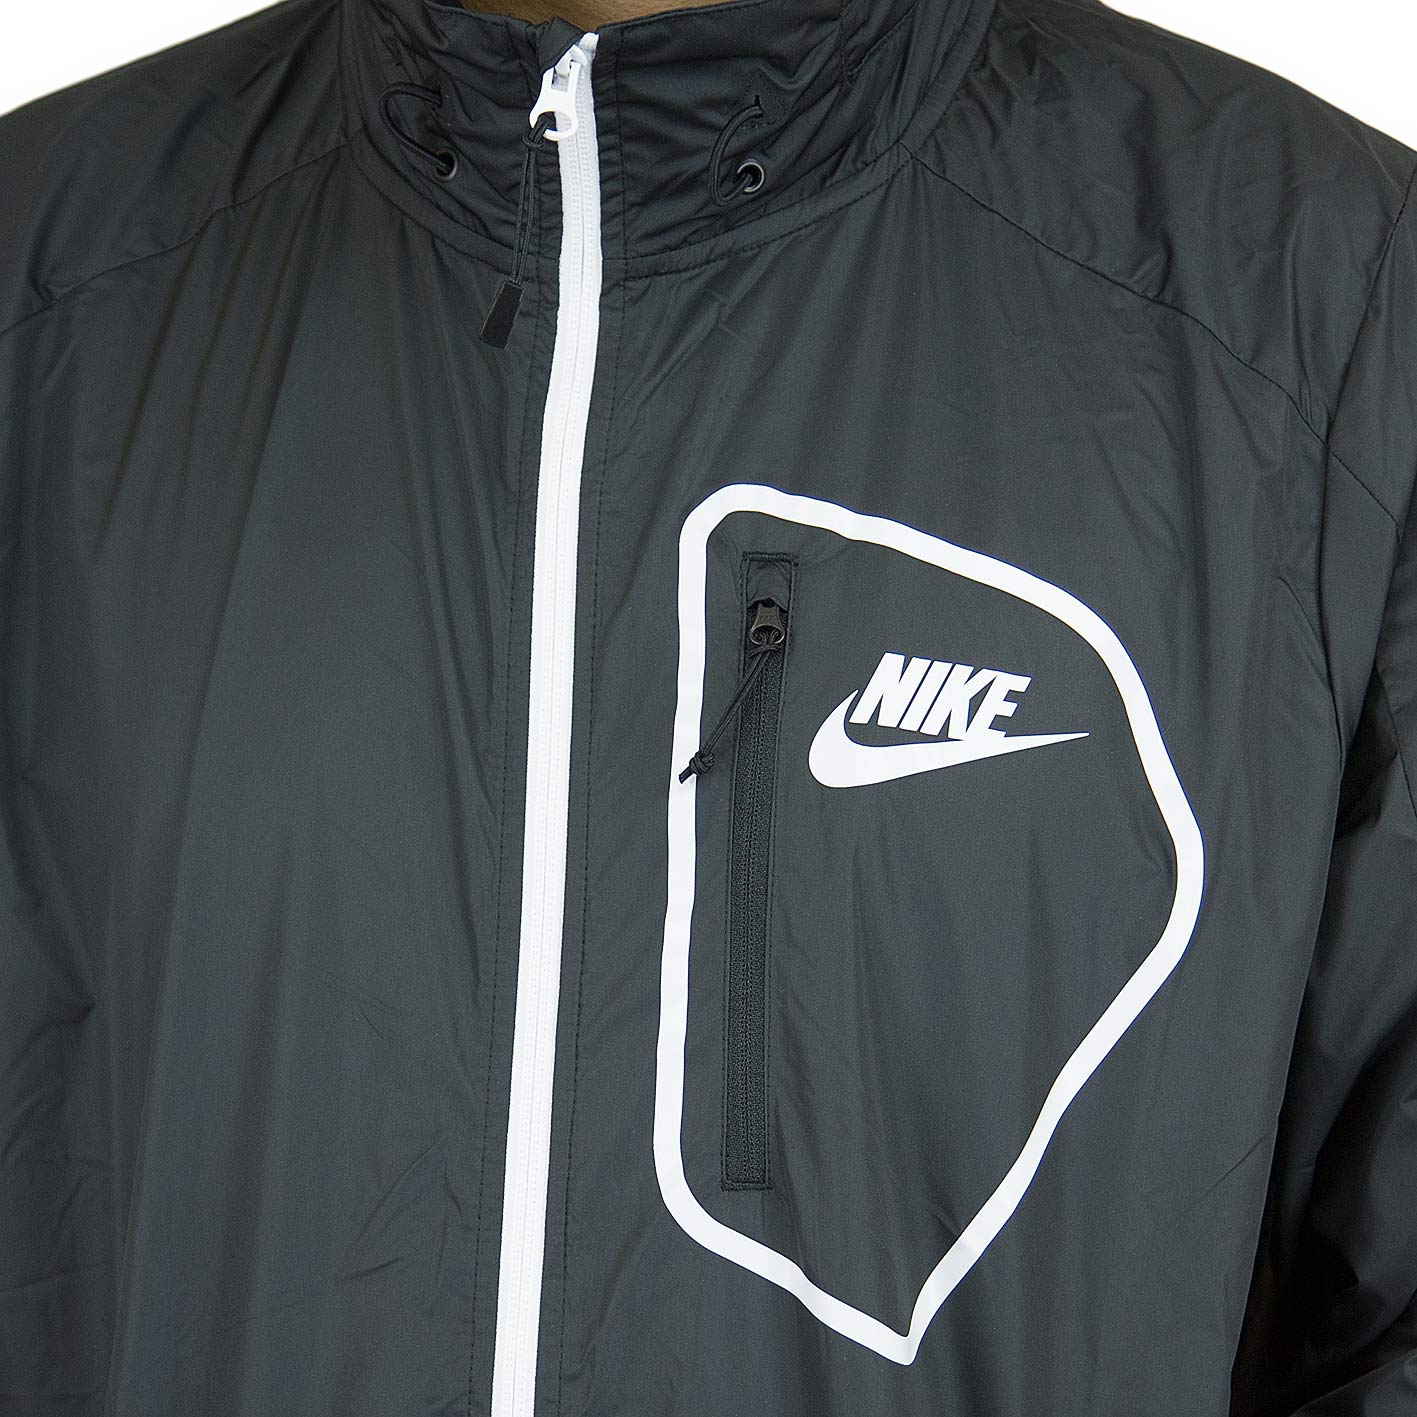 ☆ Nike Trainingsjacke Advance 15 schwarz/weiß - hier bestellen!